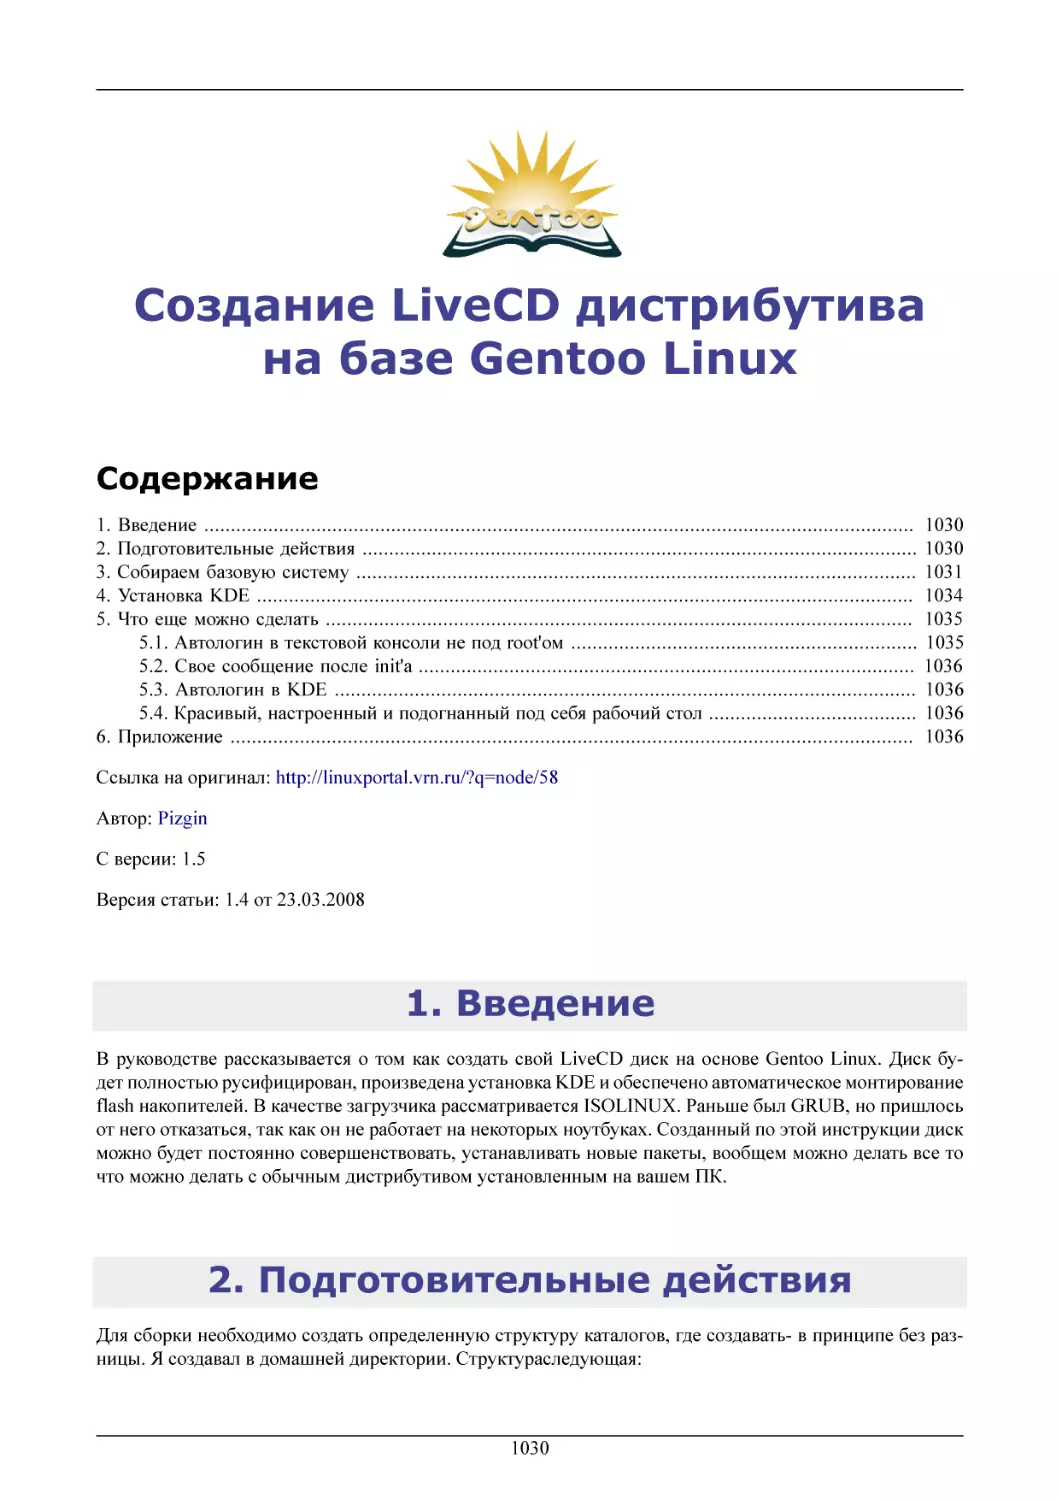 Создание LiveCD дистрибутива на базе Gentoo Linux
Введение
Подготовительные действия